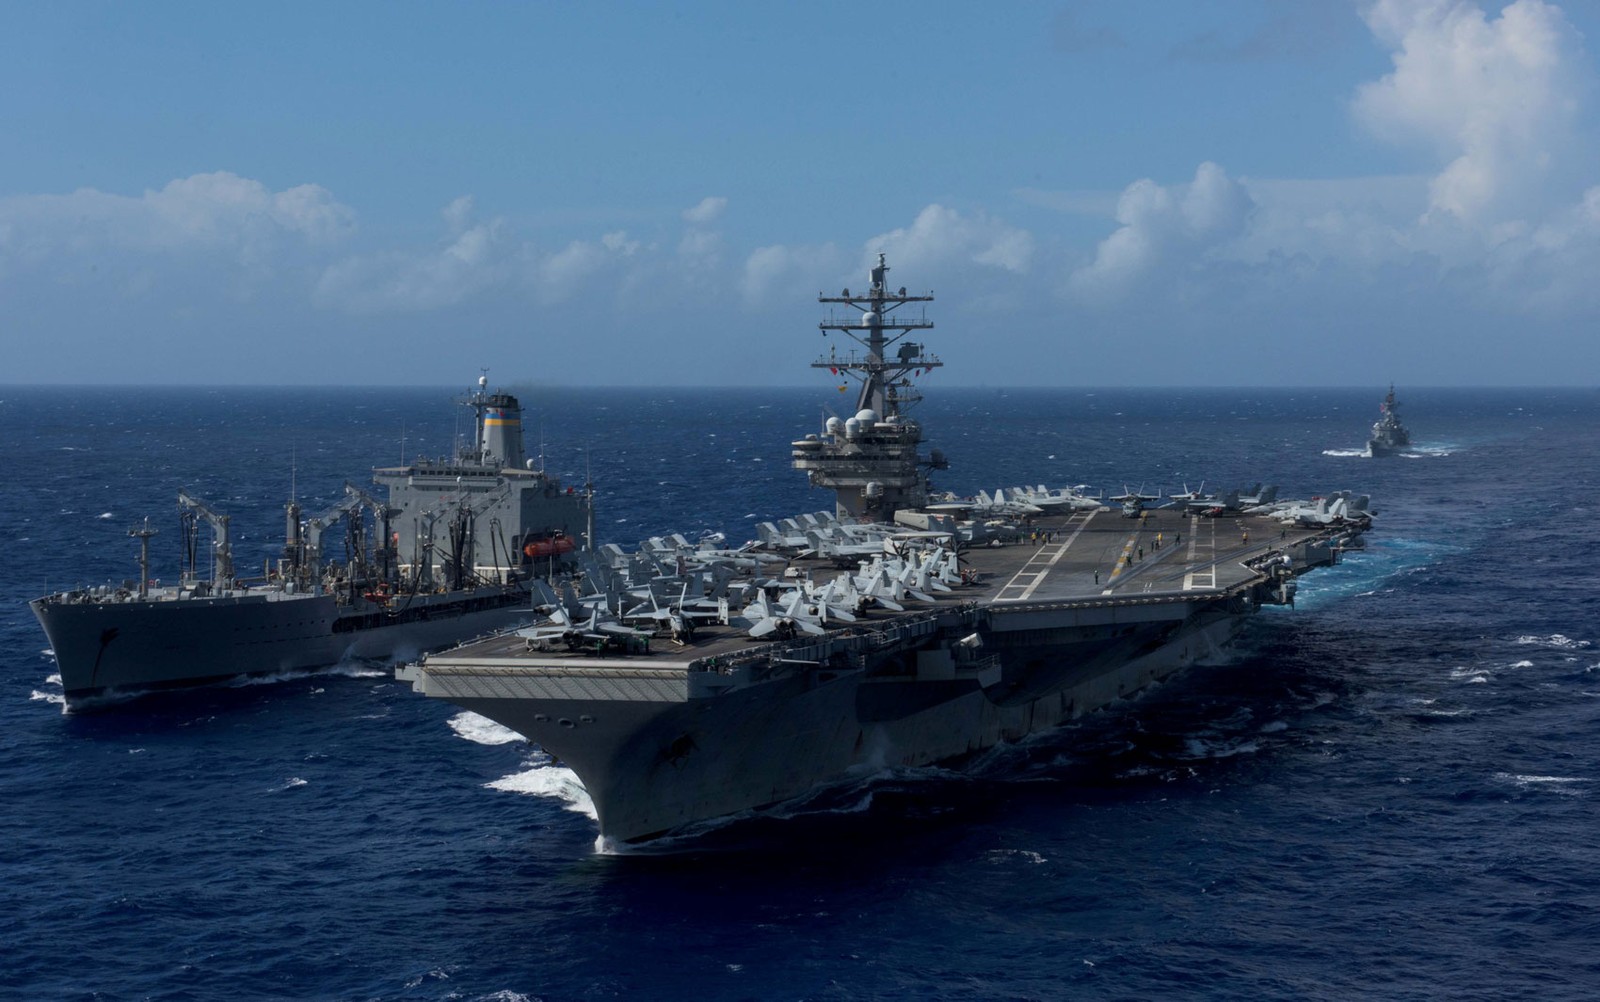 O USS Ronald Reagan (direita) é visto durante operação de reabastecimento no mar nas águas ao redor de Okinawa, sudoeste da península coreana, em foto de 9 de outubro (Foto: U.S. Navy/Mass Communication Specialist 2nd Class Kenneth Abbate/via Reuters)